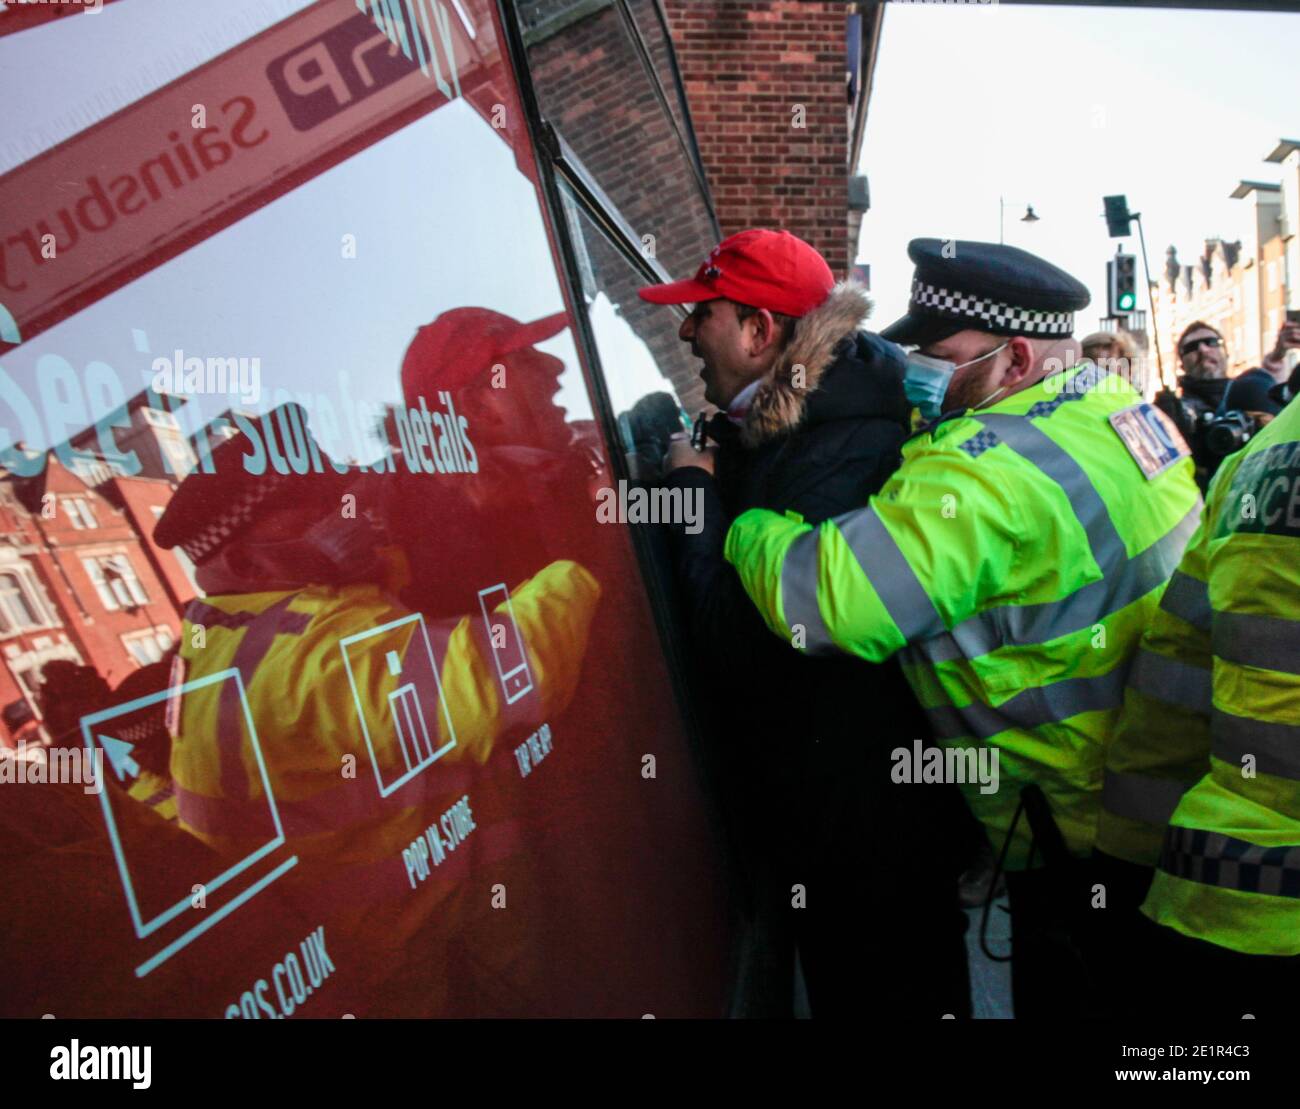 Londres Reino Unido 09 de enero de 2021 los manifestantes anti-encierro se enfrentaron con la policía En Clapham High Street.Paul Quezada-Neiman/Alamy Live News Foto de stock